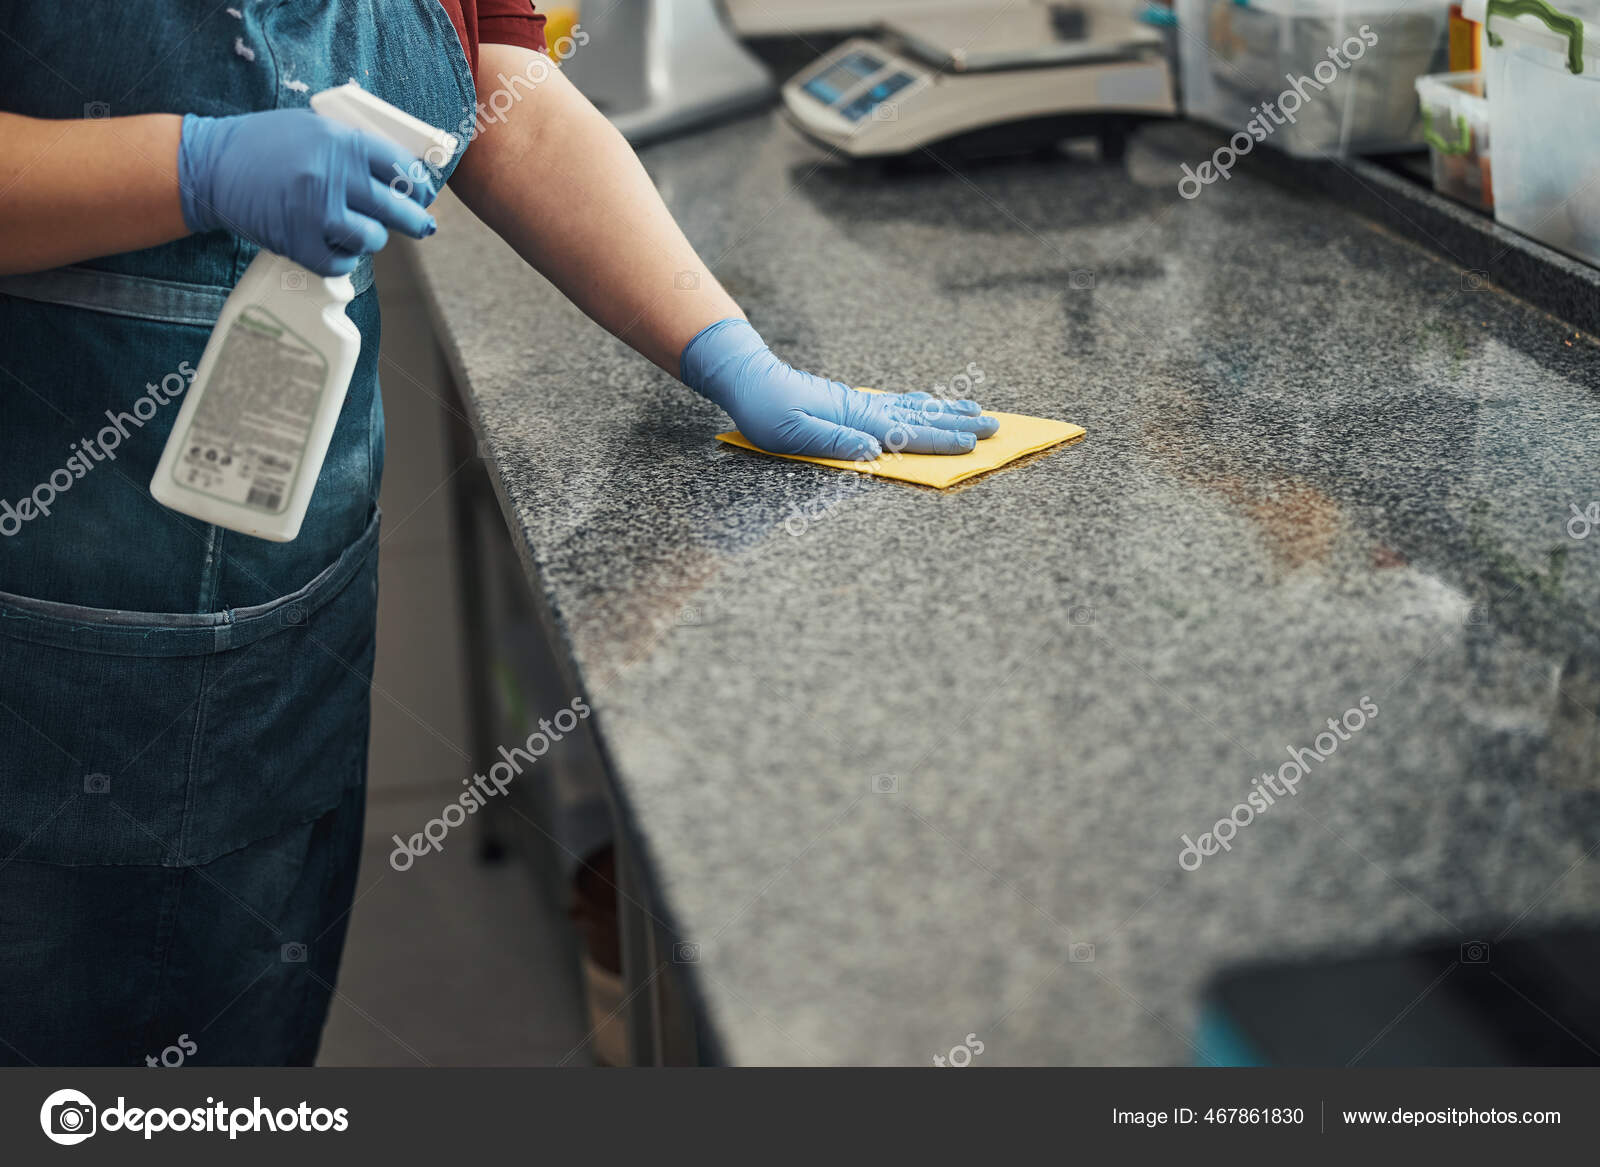 When should kitchen staff wear gloves?